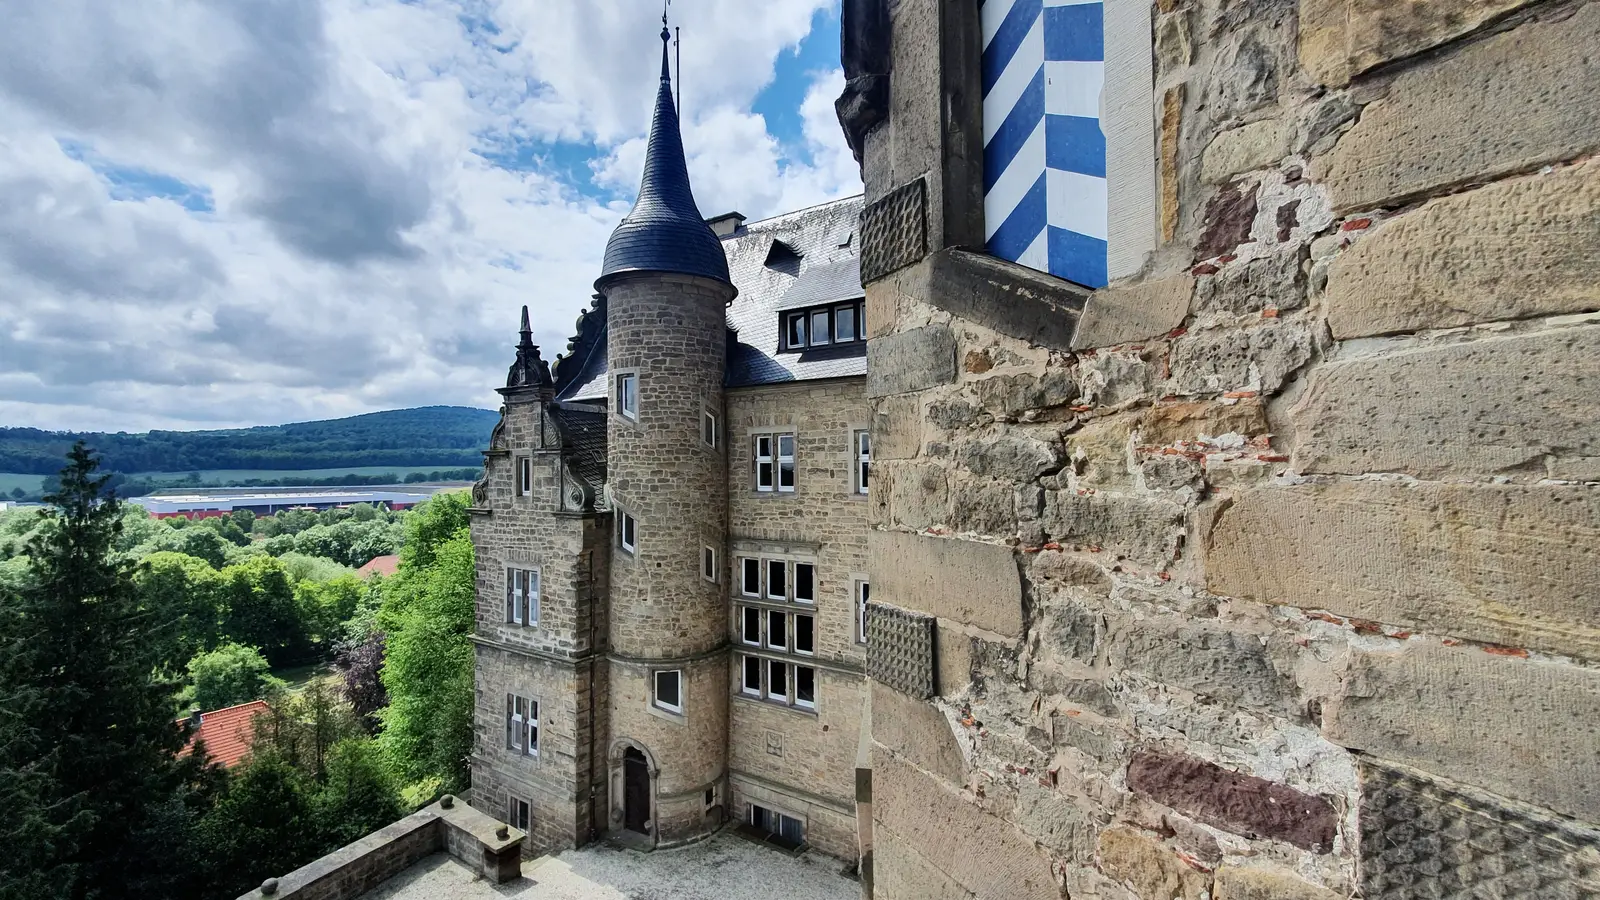 Burgen in Südniedersachsen, Burg Adelebsen, Burgruine, Schloss Adelebsen, Sehenswürdigkeiten bei Göttingen